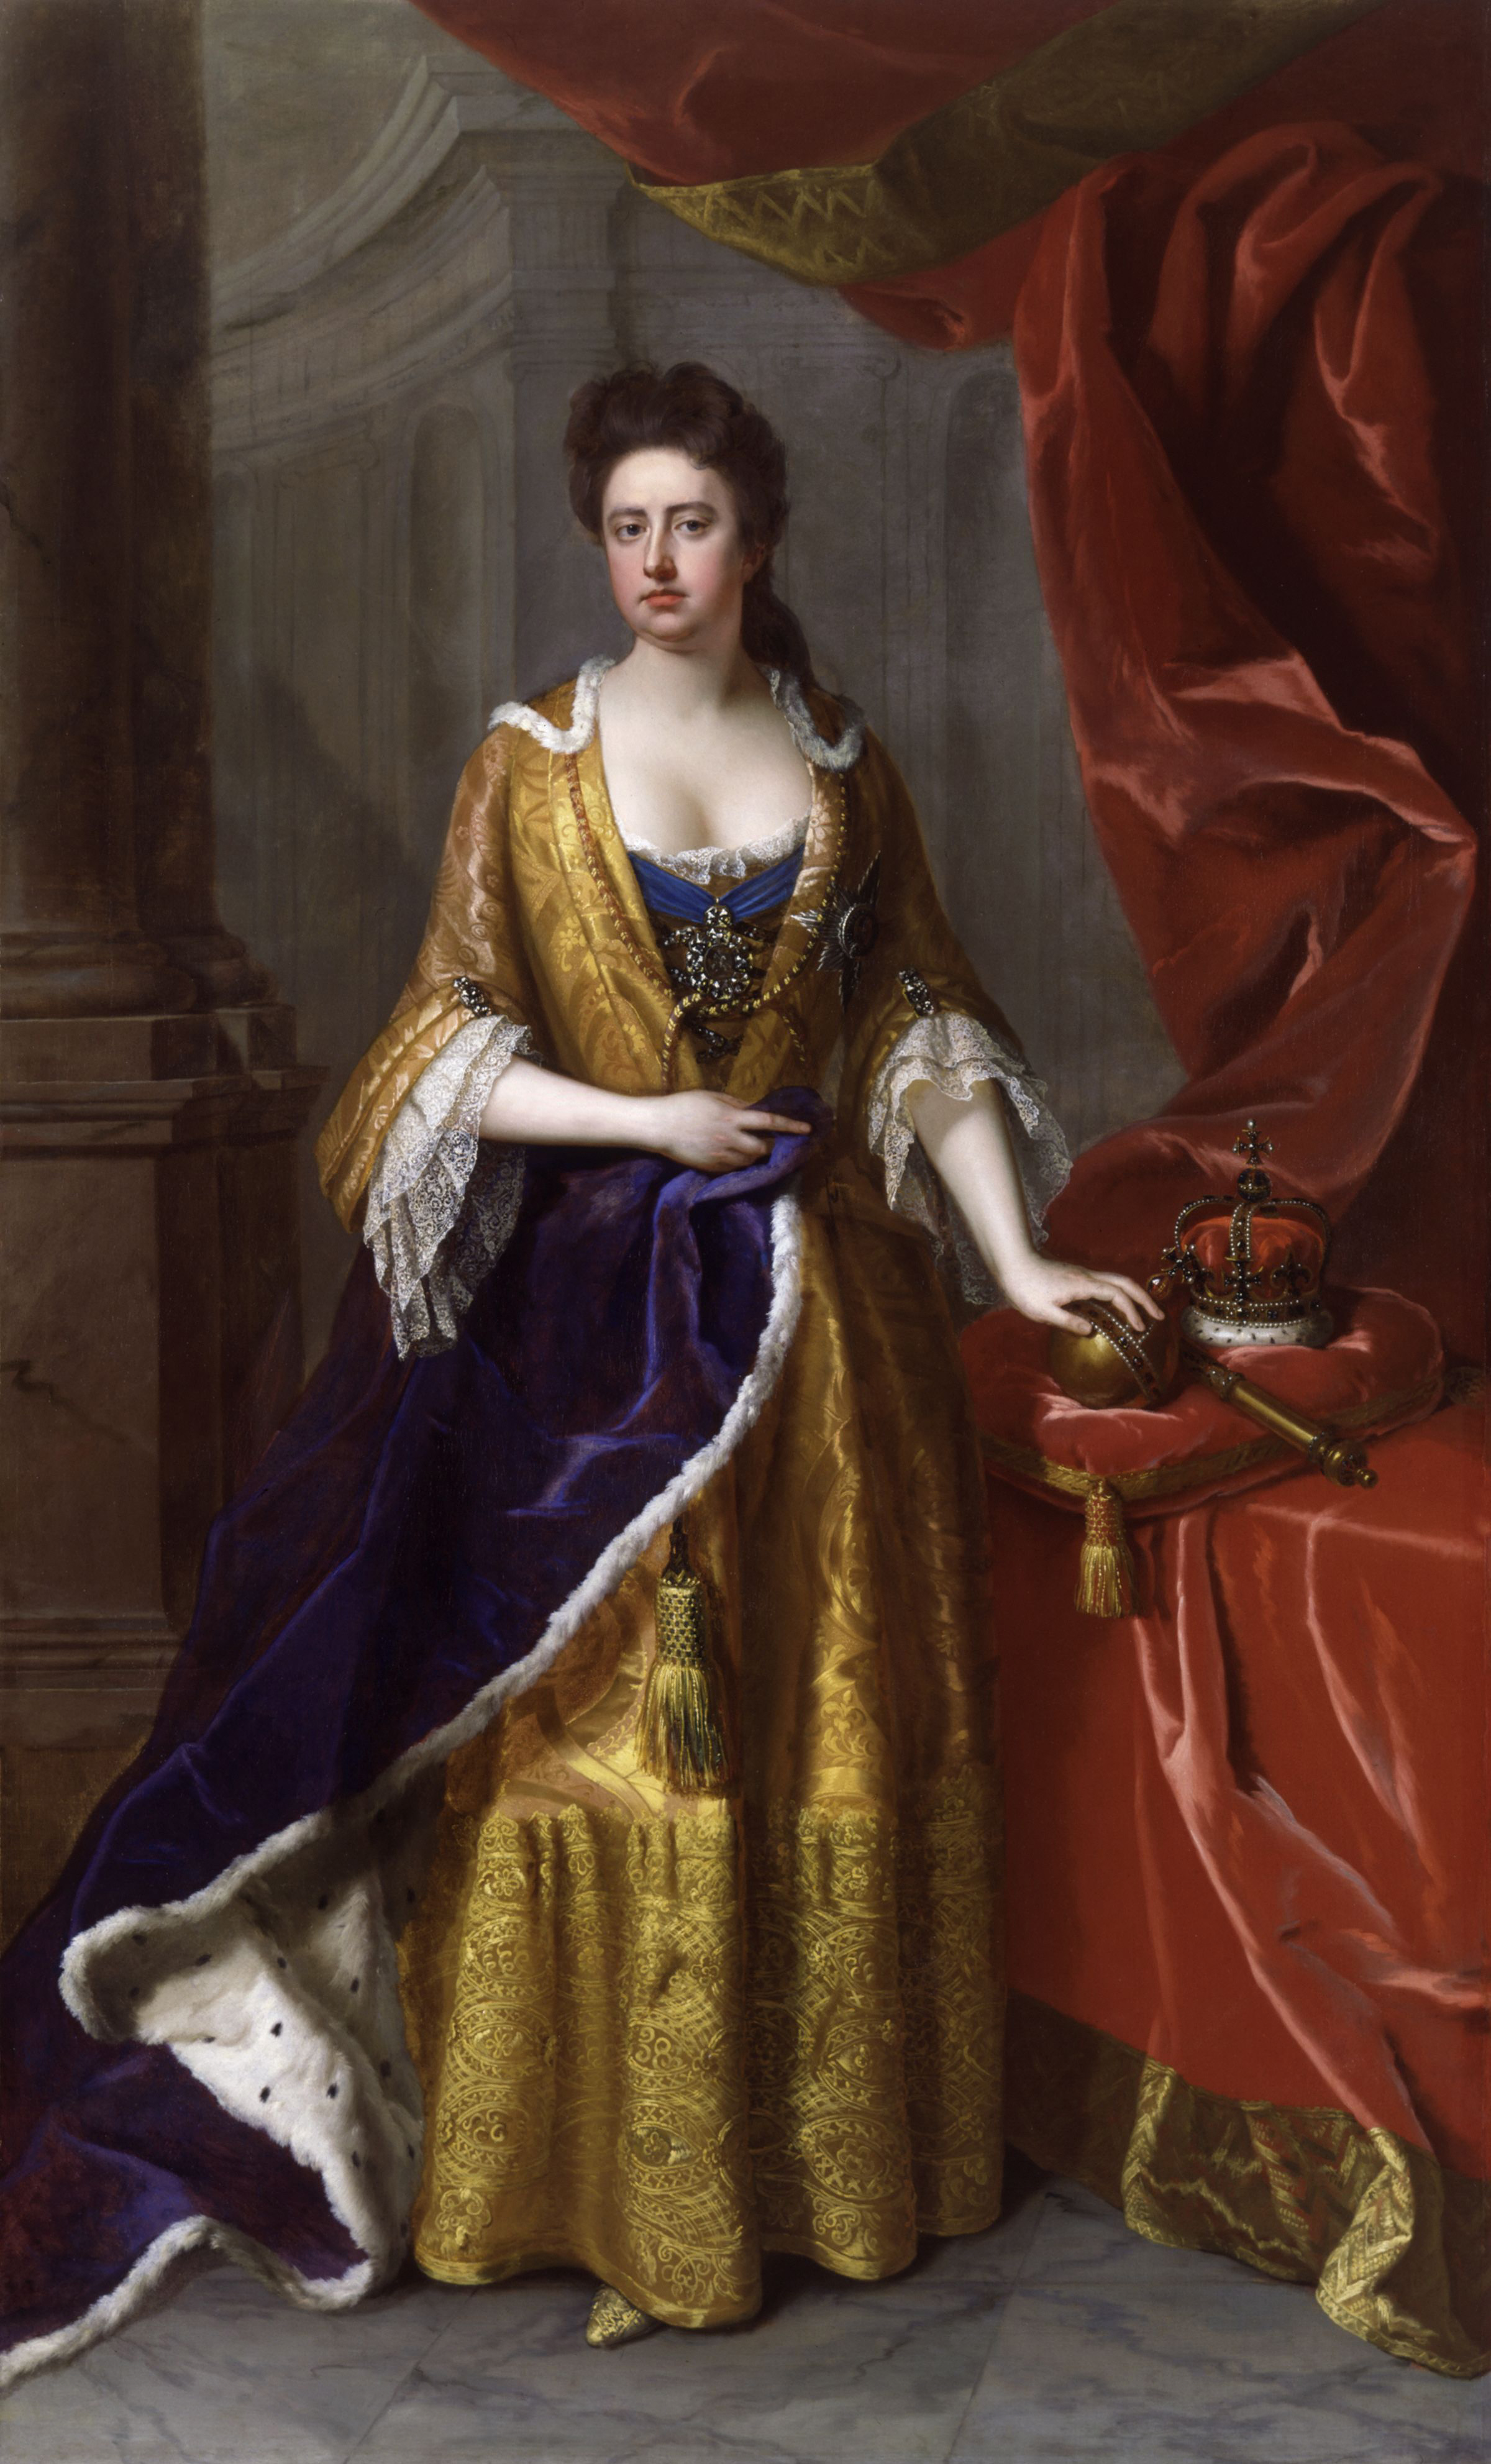 https://en.wikipedia.org/wiki/Anne,_Queen_of_Great_Britain